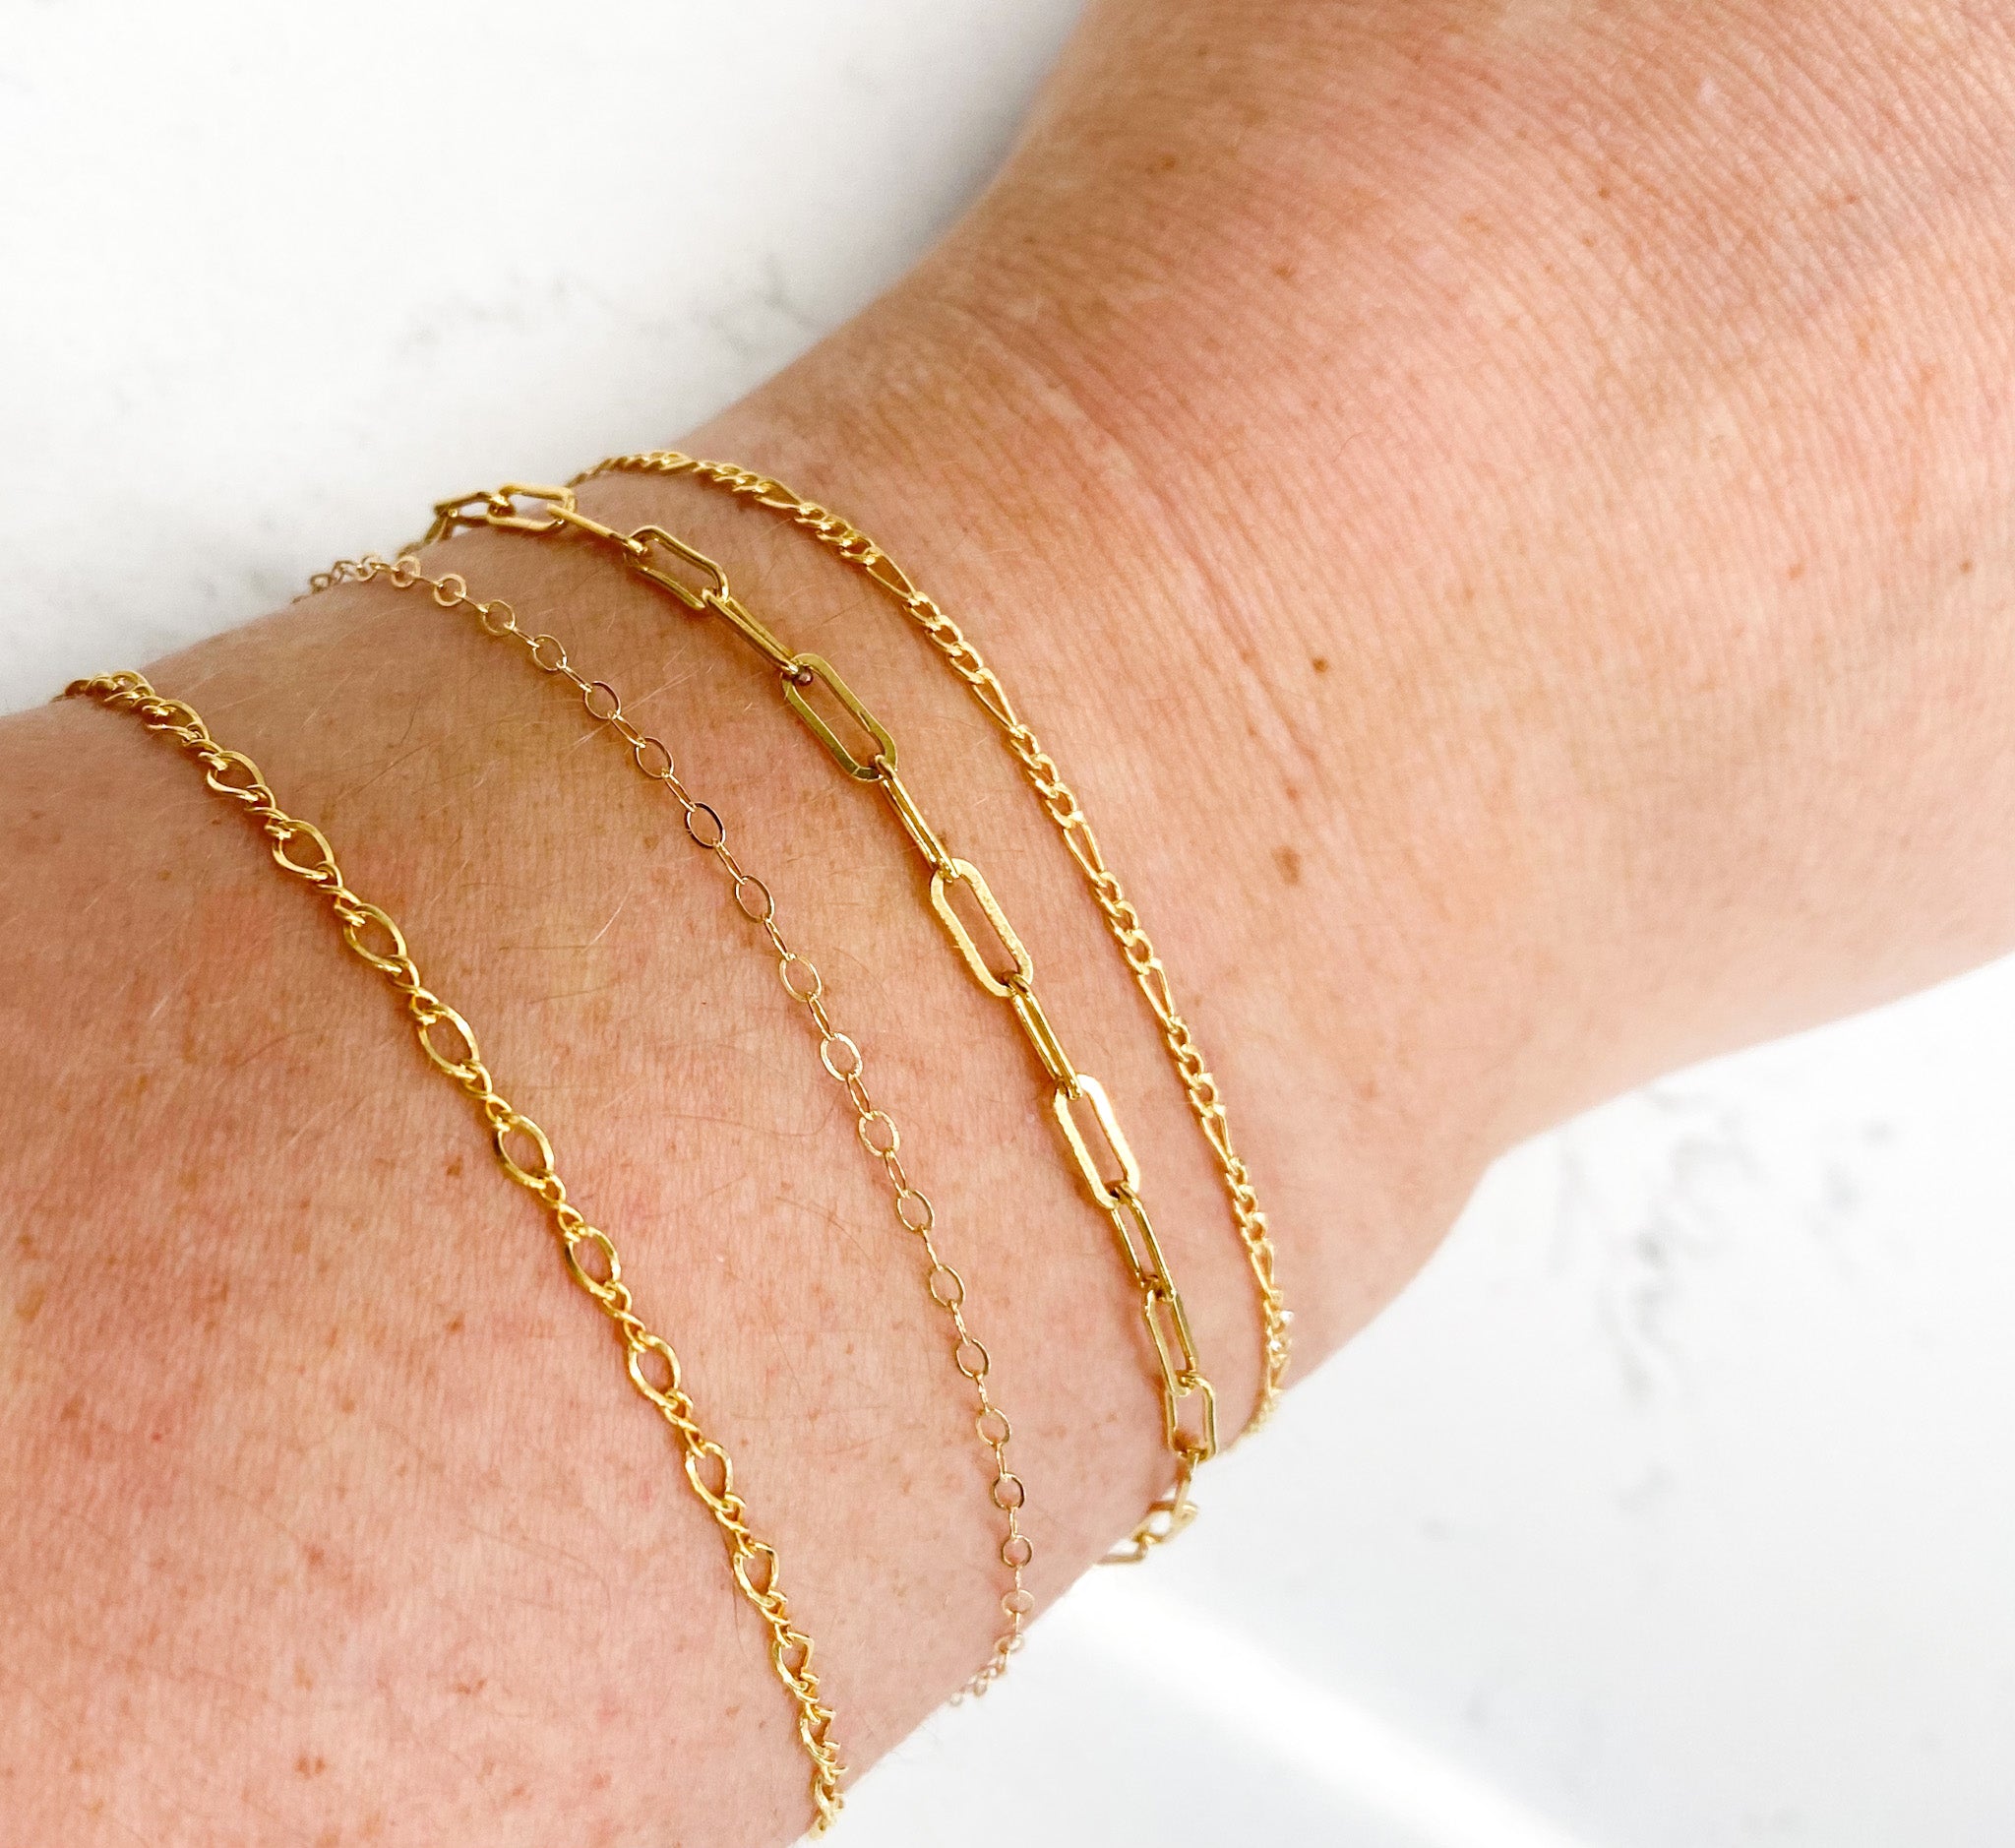 Permanent Bracelets in Austin - Infinity Bracelets by Amanda Deer Jewelry